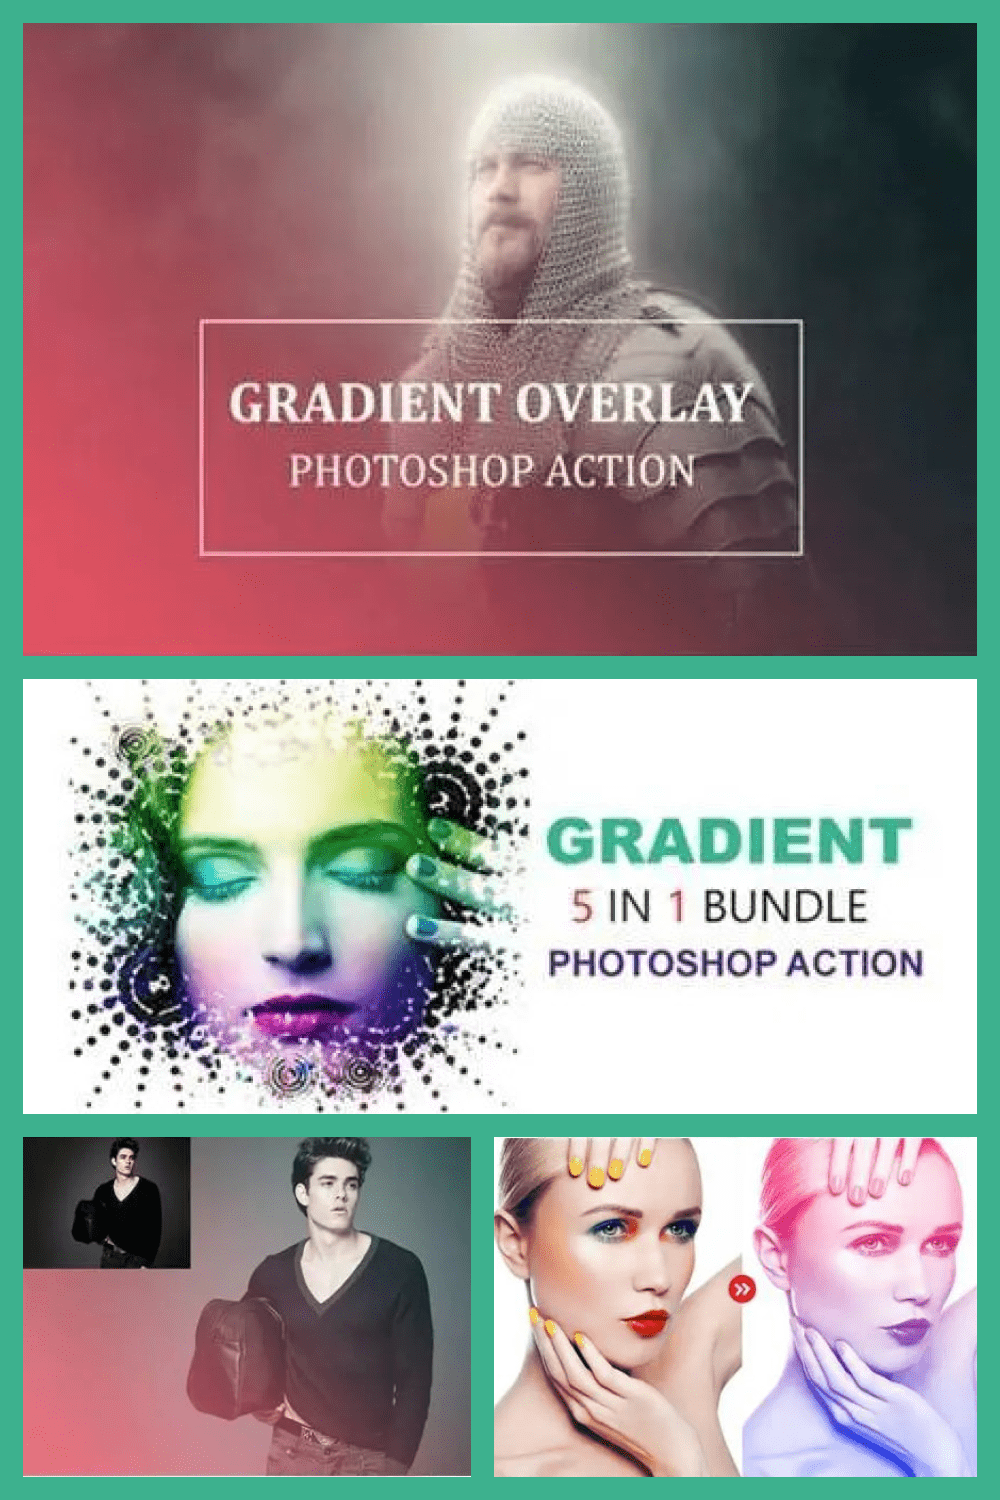 5 In 1 Gradient Photoshop Actions Bundle - MasterBundles - Pinterest Collage Image.